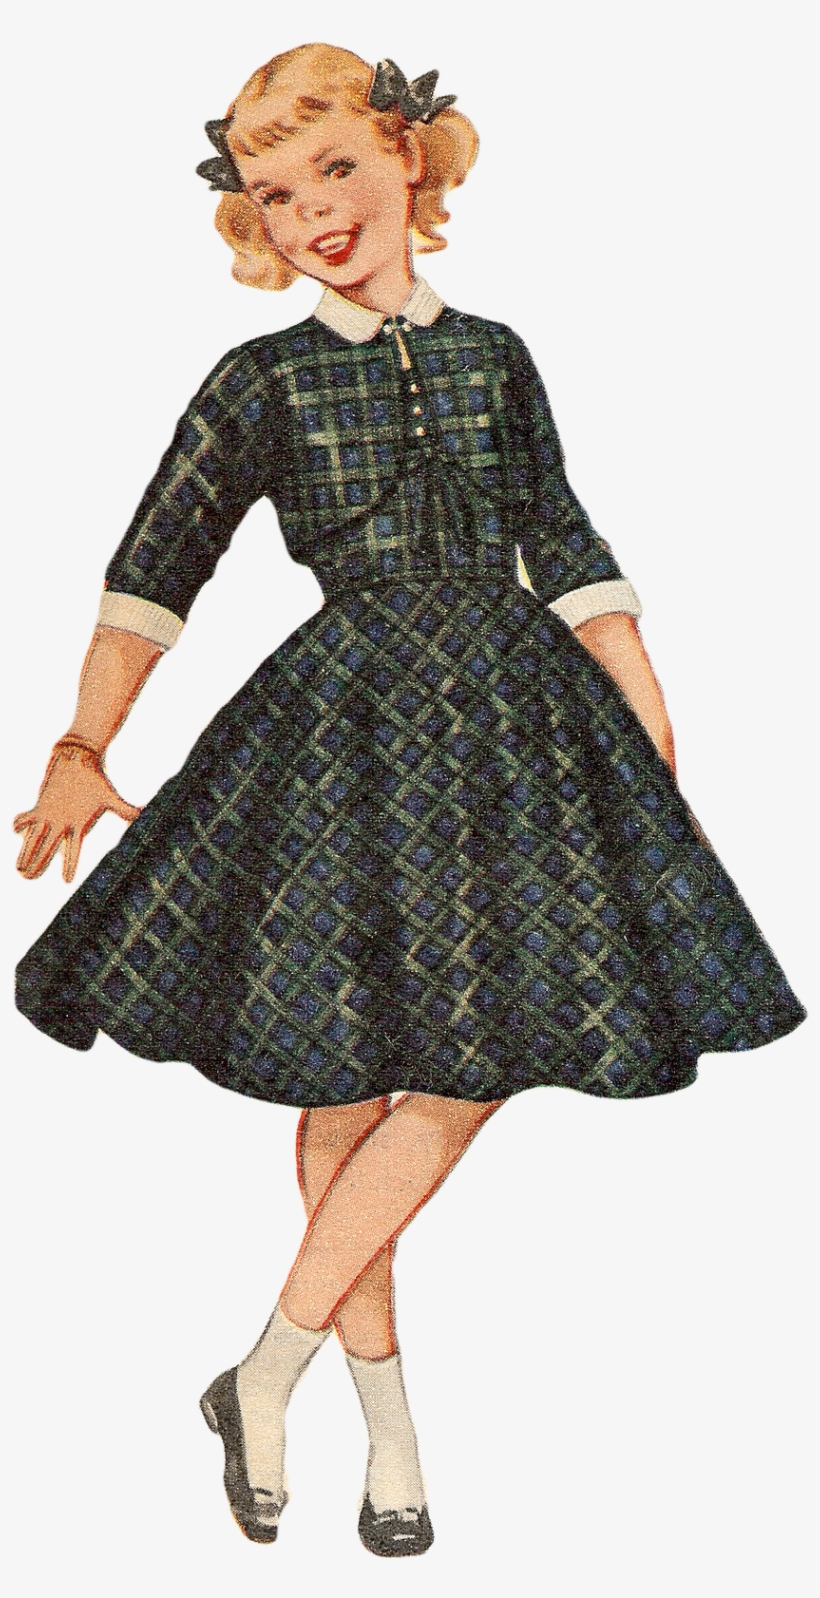 Free Vintage Image 1955 Girl 842×1,600 Pixels Vintage - Vintage Clothing, transparent png #3012664